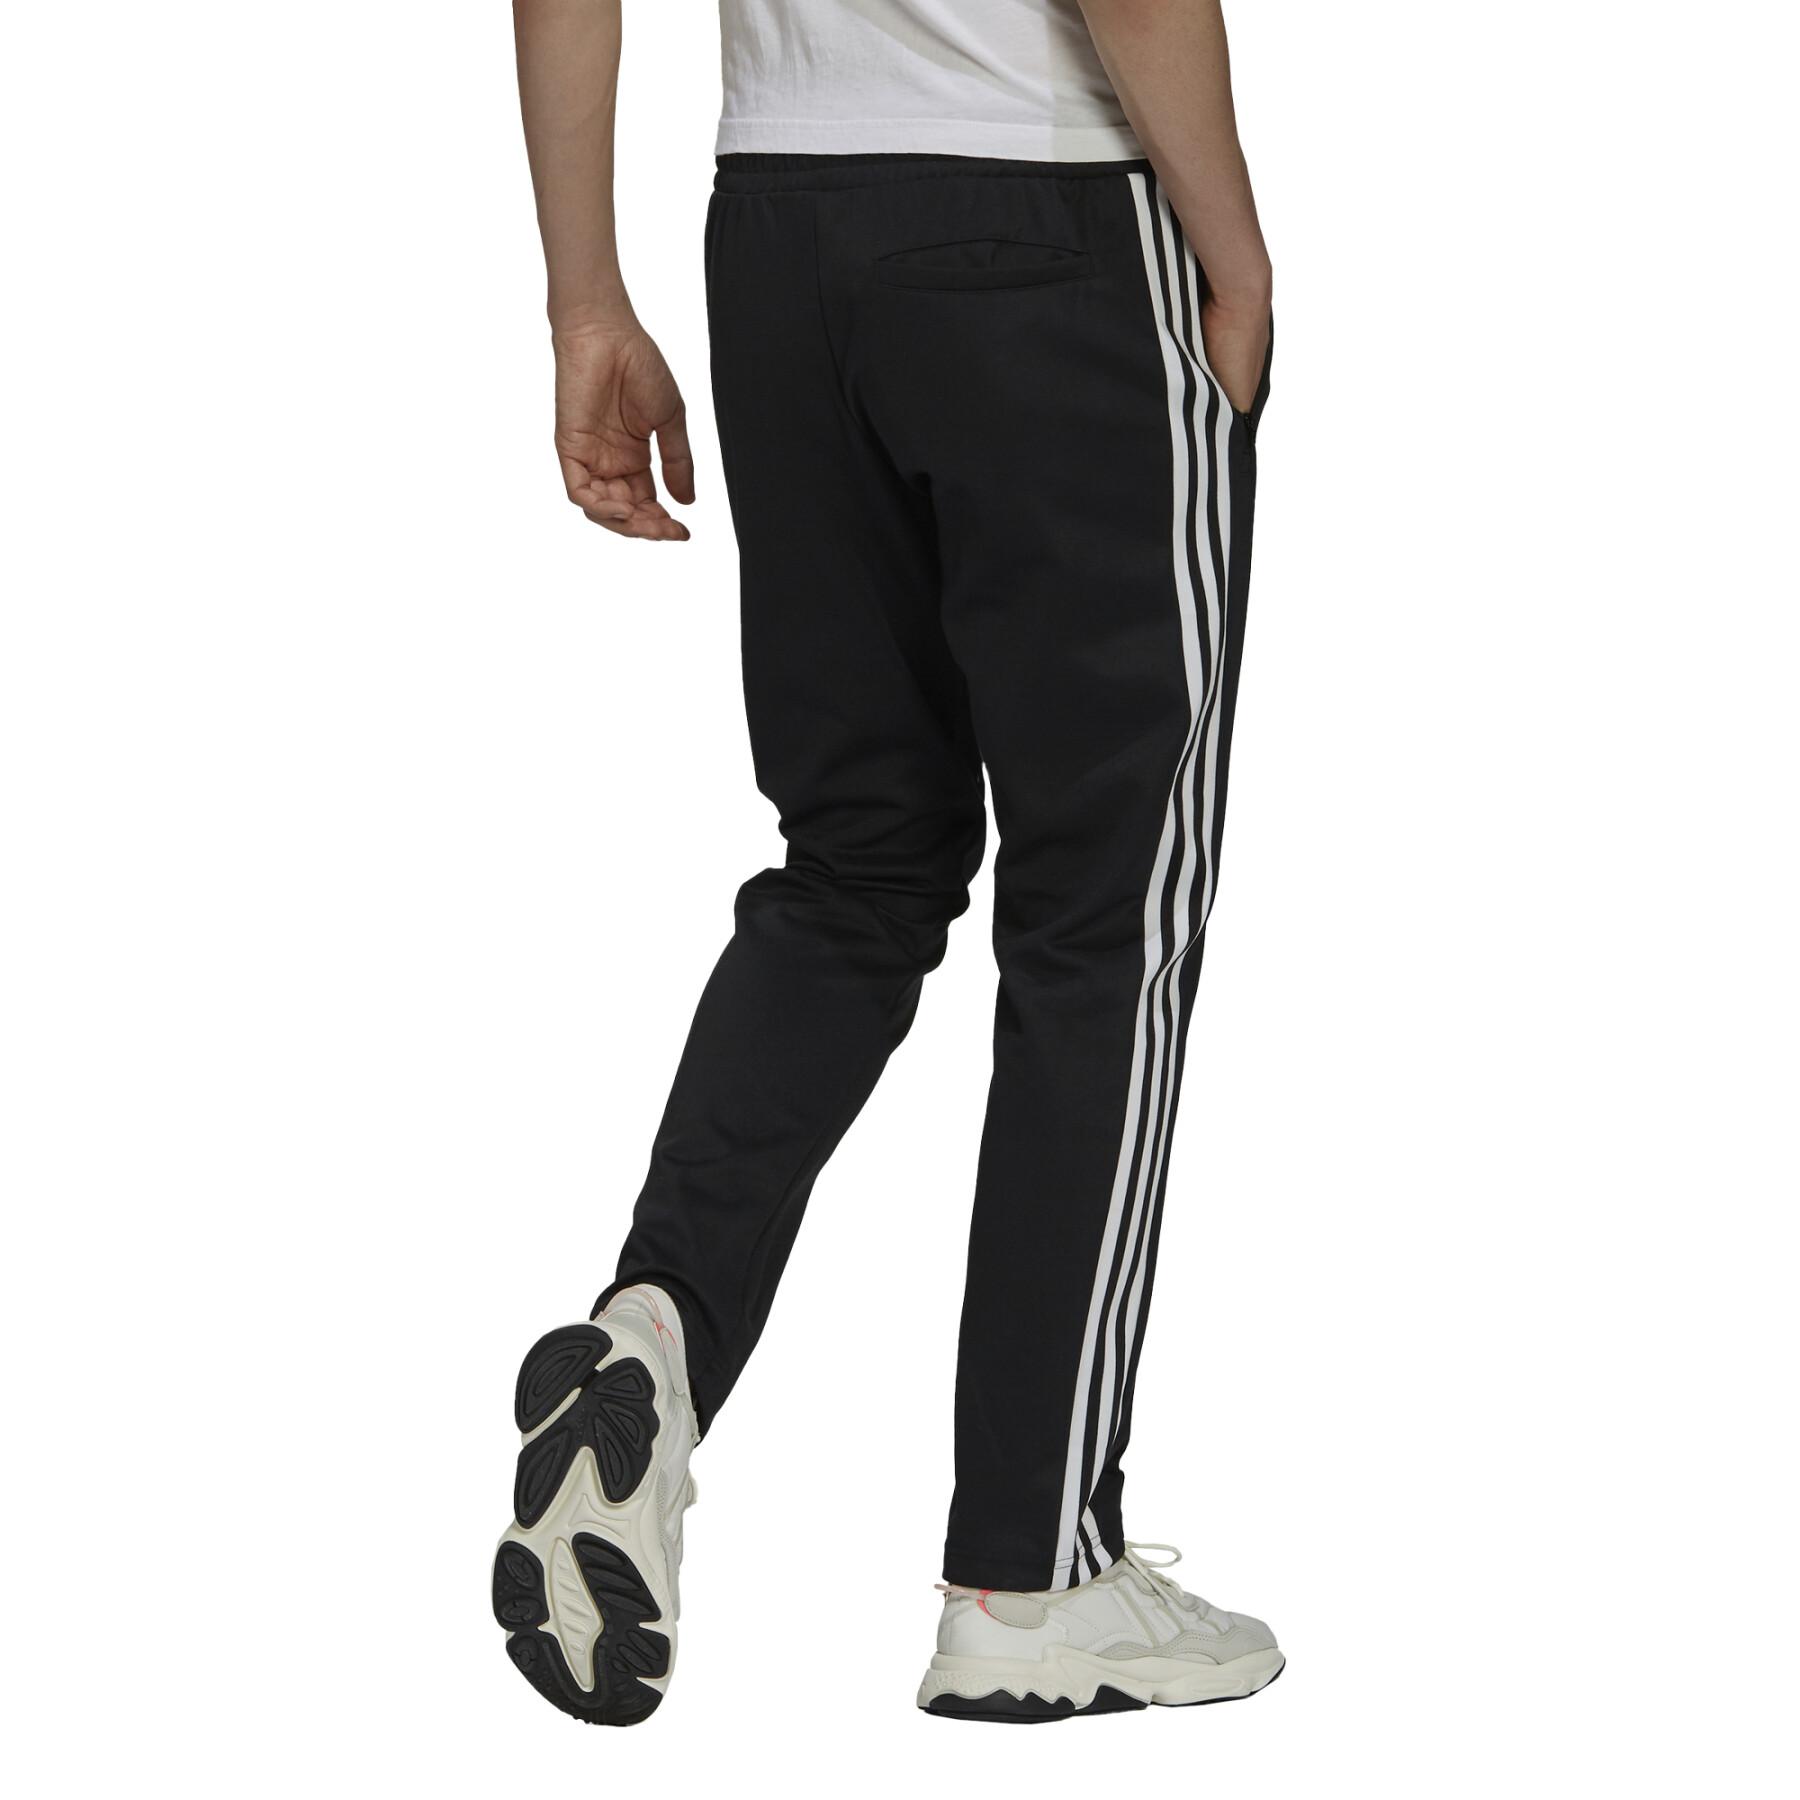 Pantalon de adidas Originals Adicolor s Beckenbauer